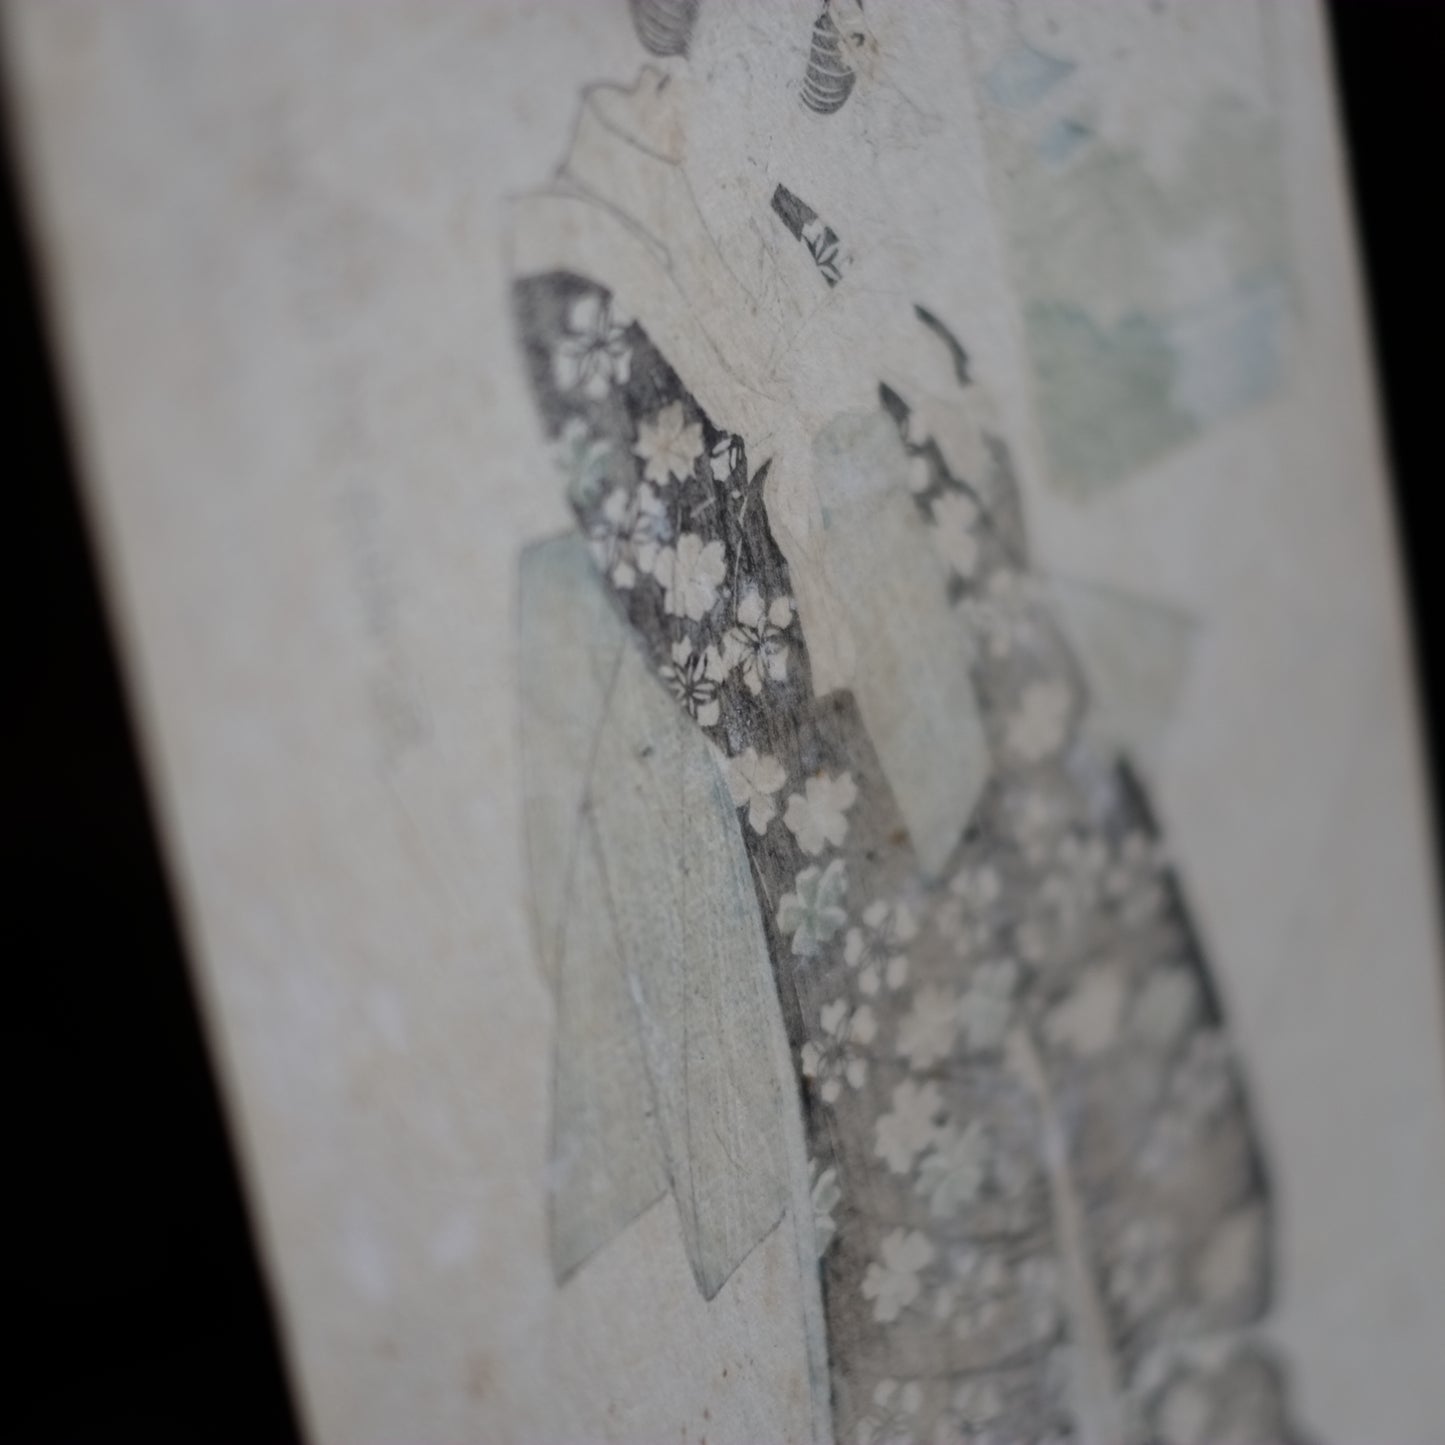 歌川国安　浮世絵　手刷木版画　額装　(江戸時代)